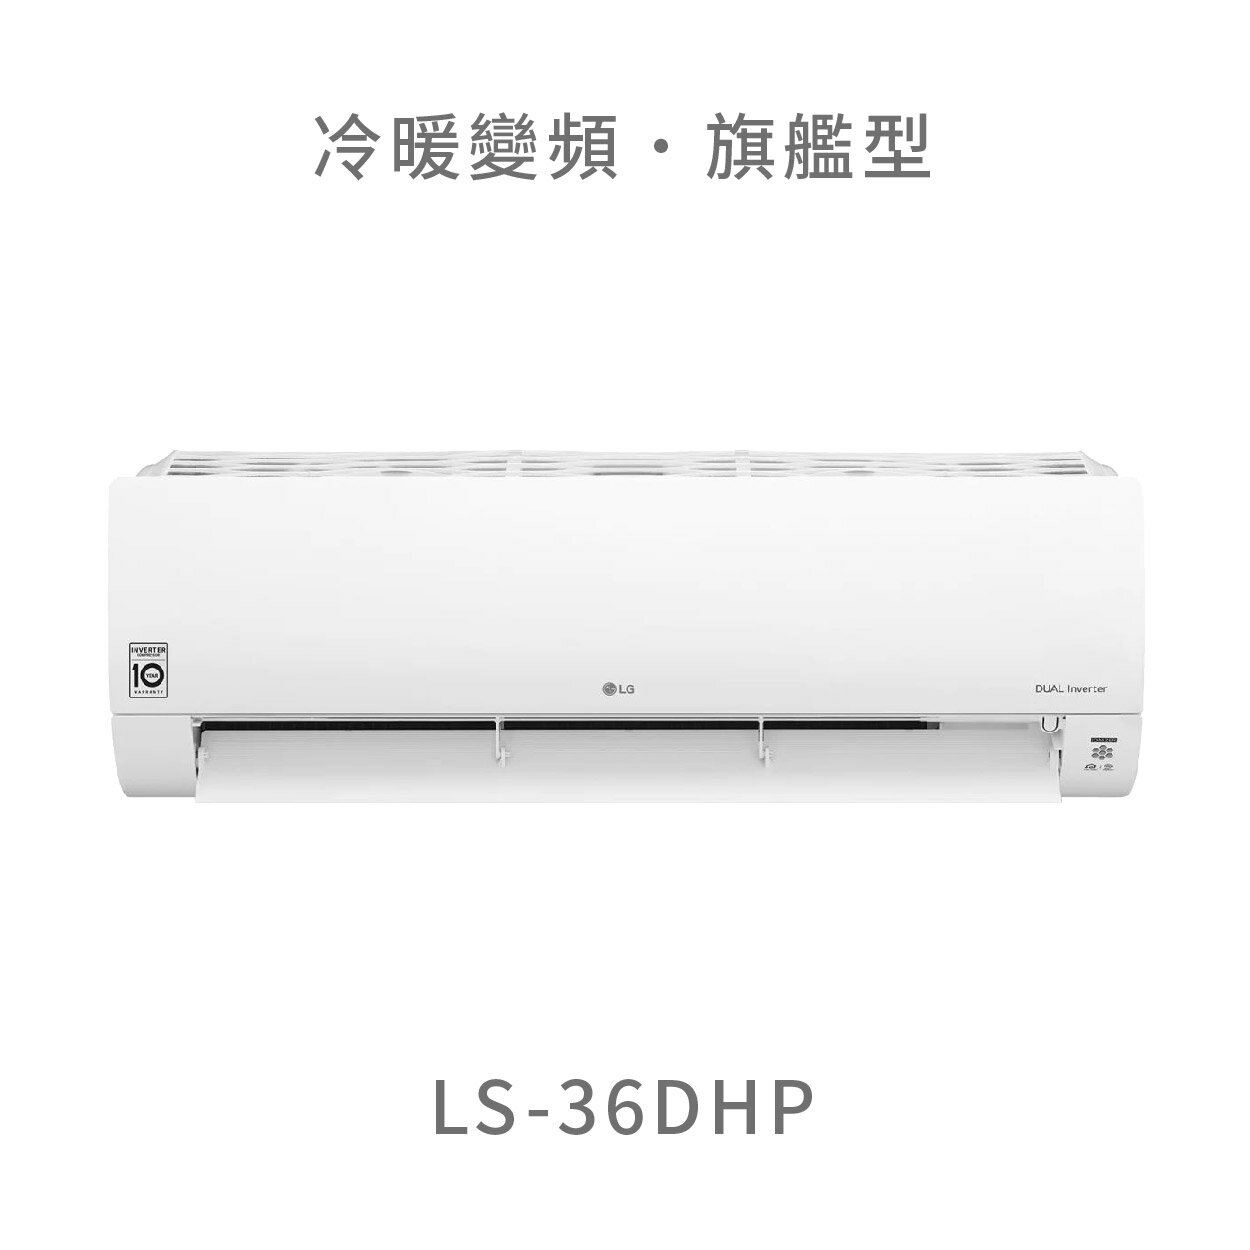 【點數10%回饋】【桃園含標準安裝】 LG LS-36DHP 3.6kw WiFi雙迴轉變頻空調 - 旗艦冷暖型